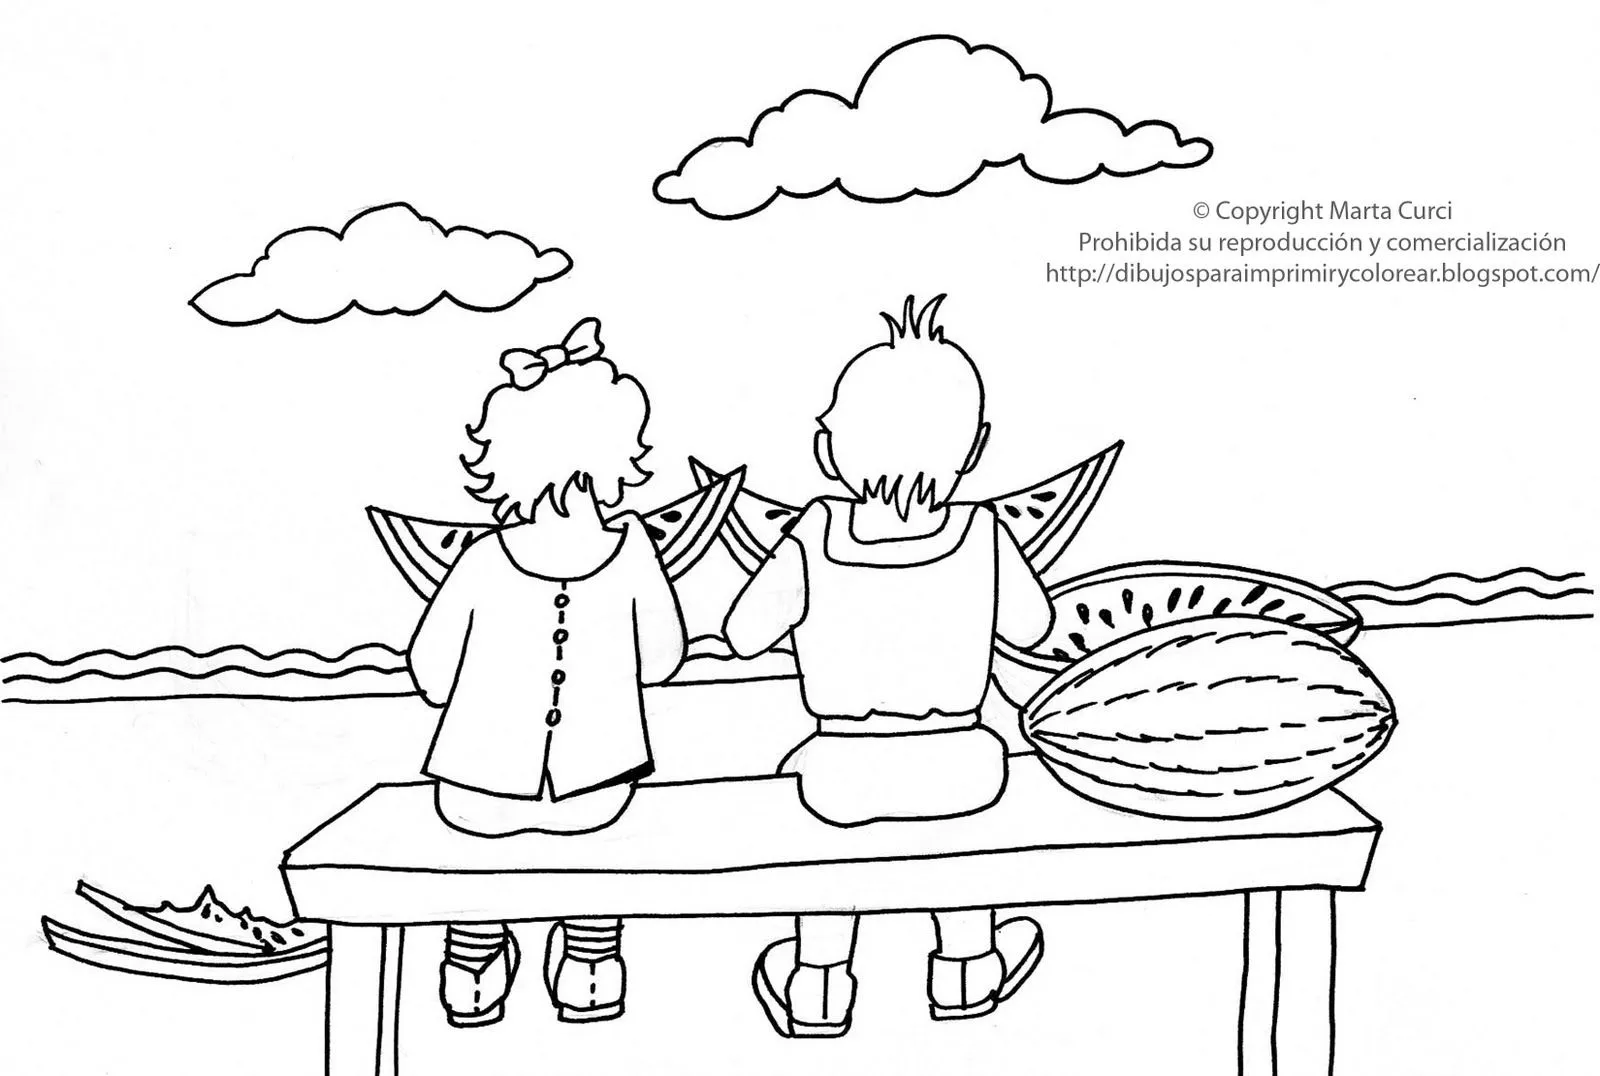  ... gratis para niños: Dibujo de niños comiendo sandia para colorear